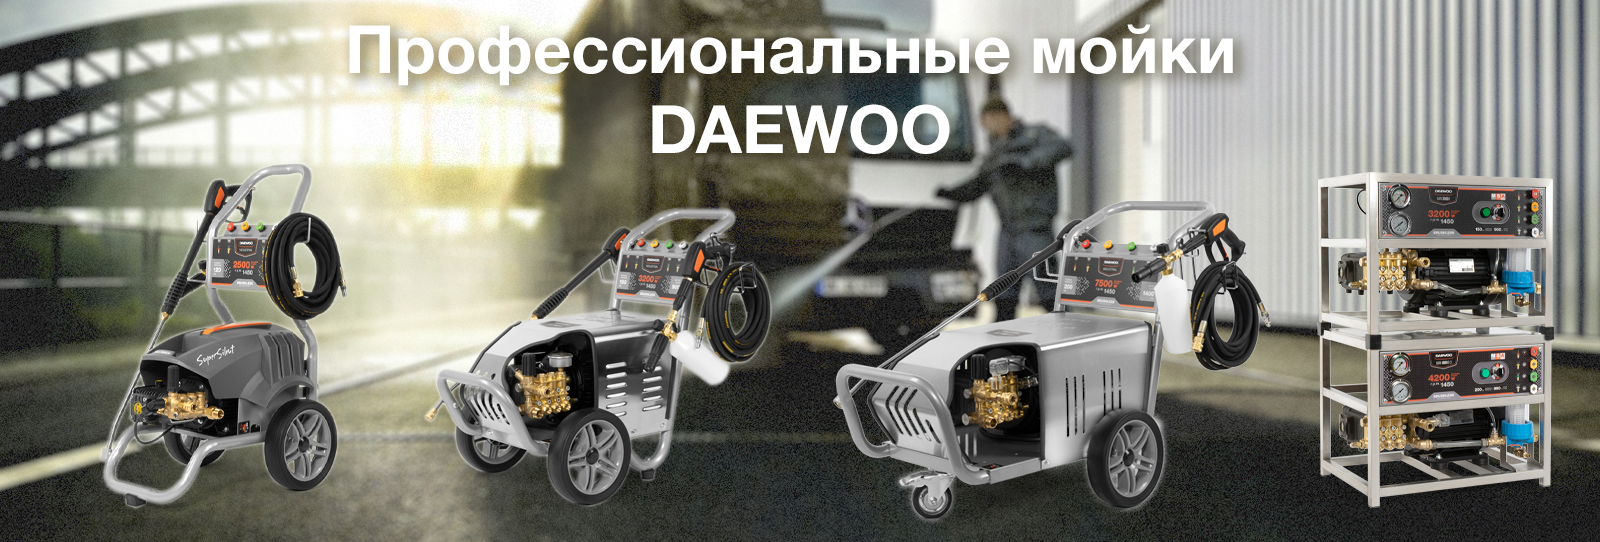 Обновление моторов на бензиновых газонокосилках DAEWOO